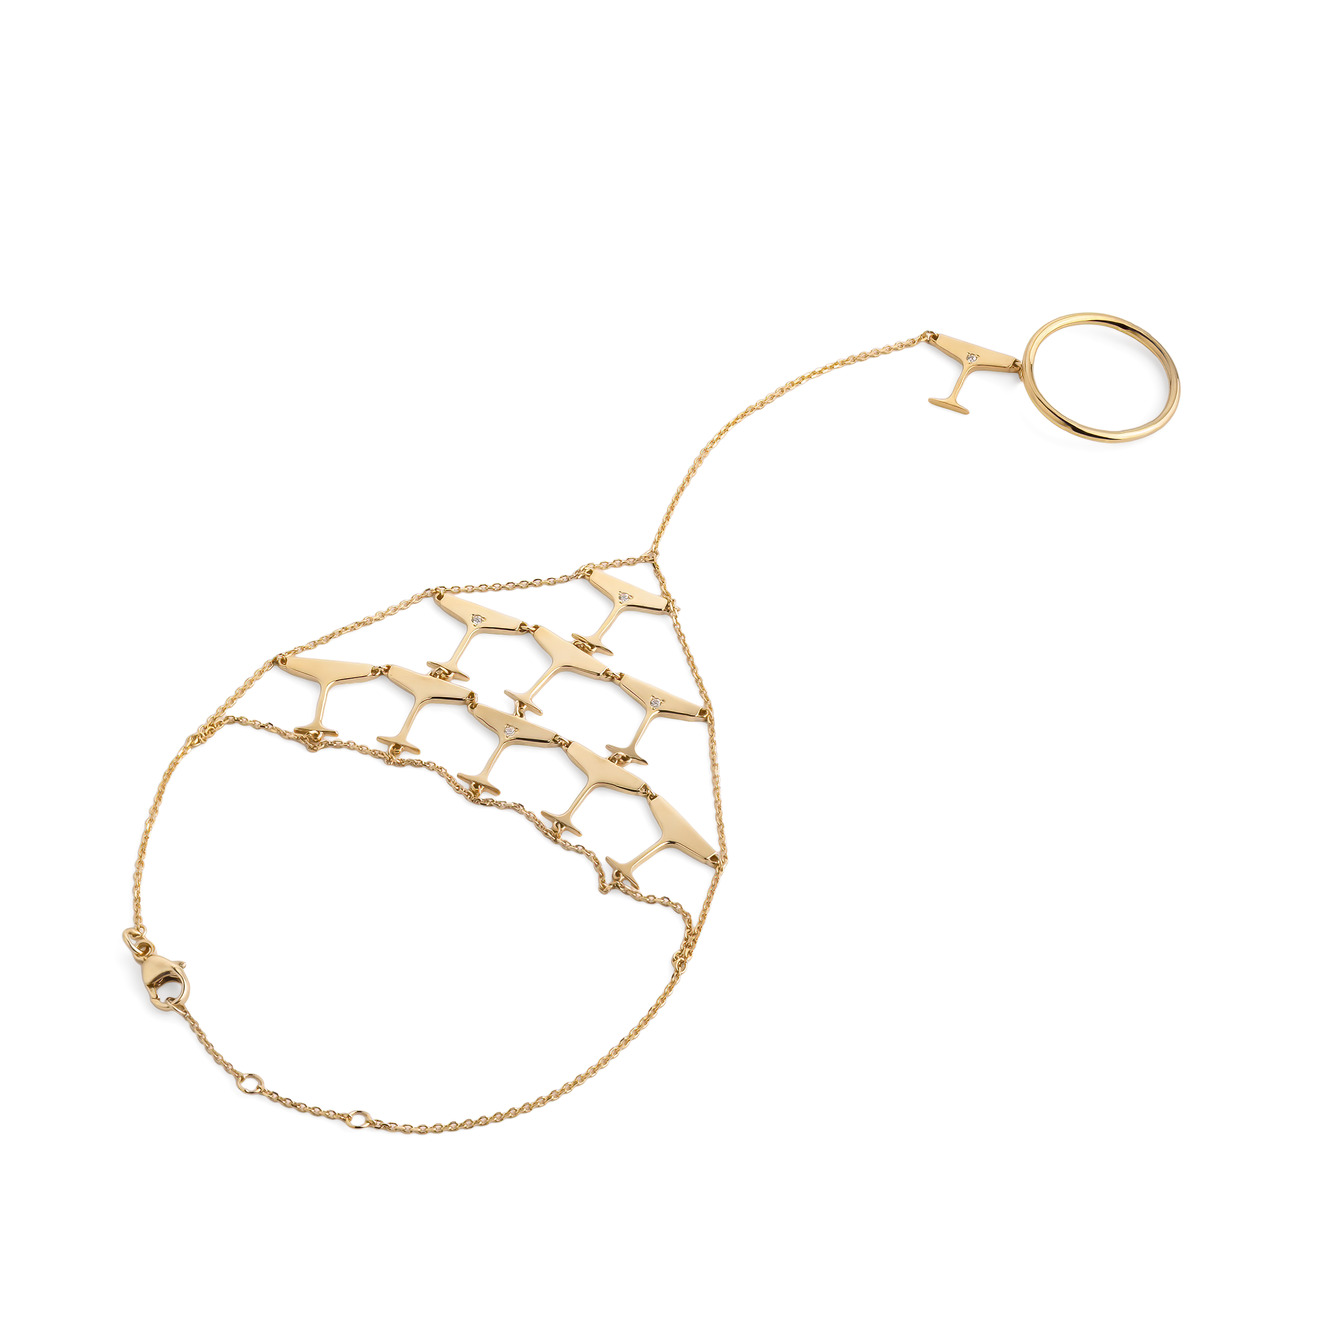 цена LUTA Jewelry Специальная коллекция Chandon x Poison Drop. Покрытый лимонным золотом браслет-слейв из серебра Sparkling